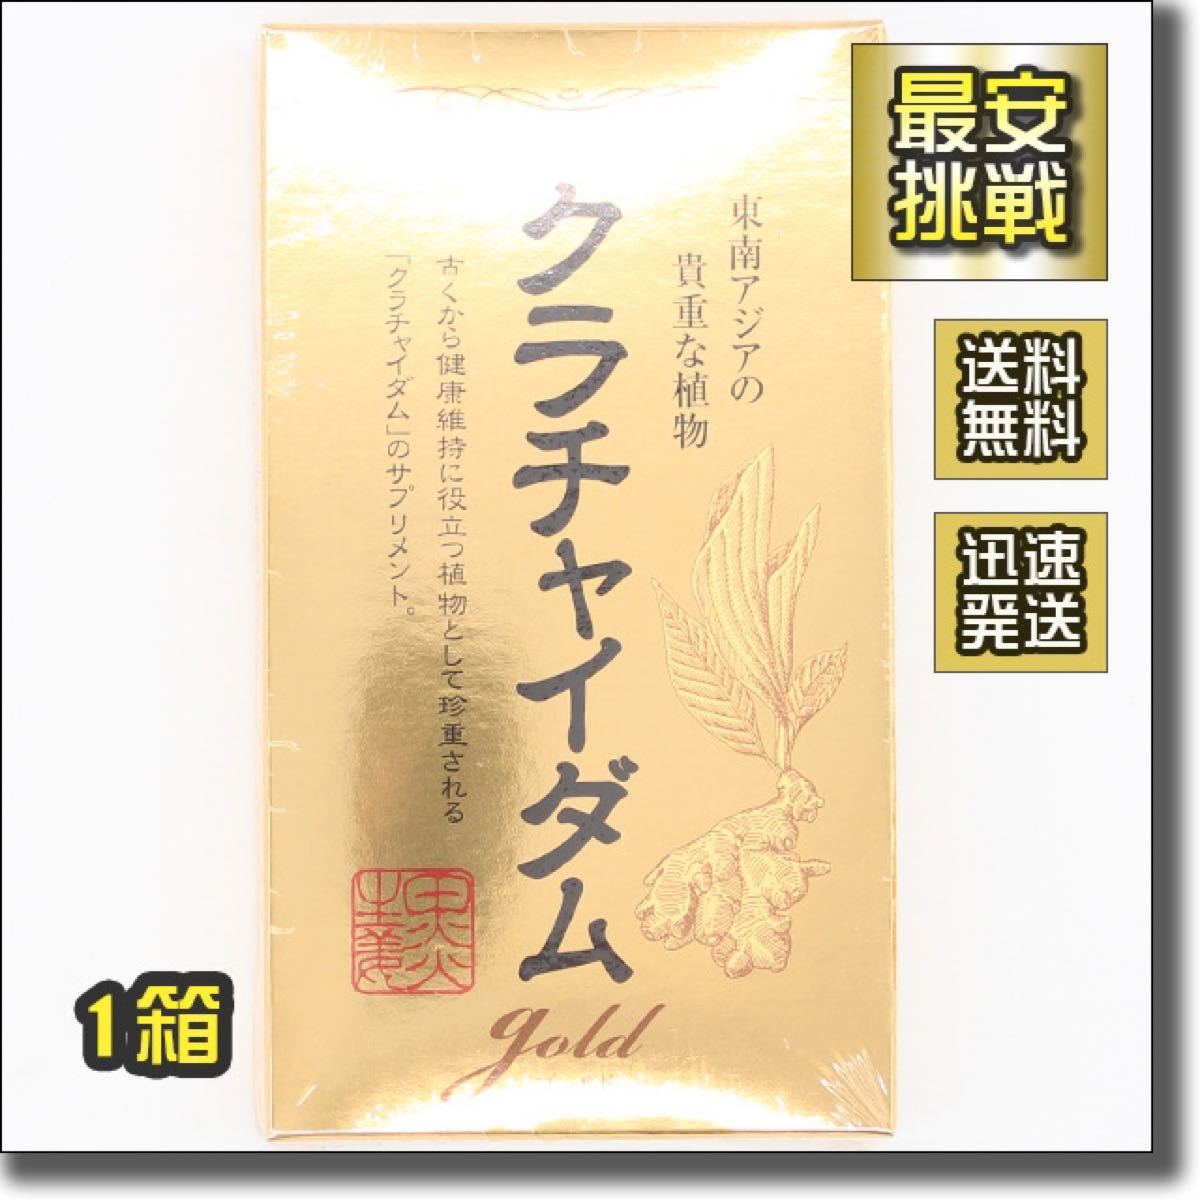 日本フーズケミカル幸抹茶風味 官報 日本フーズケミカル 幸 まっちゃ